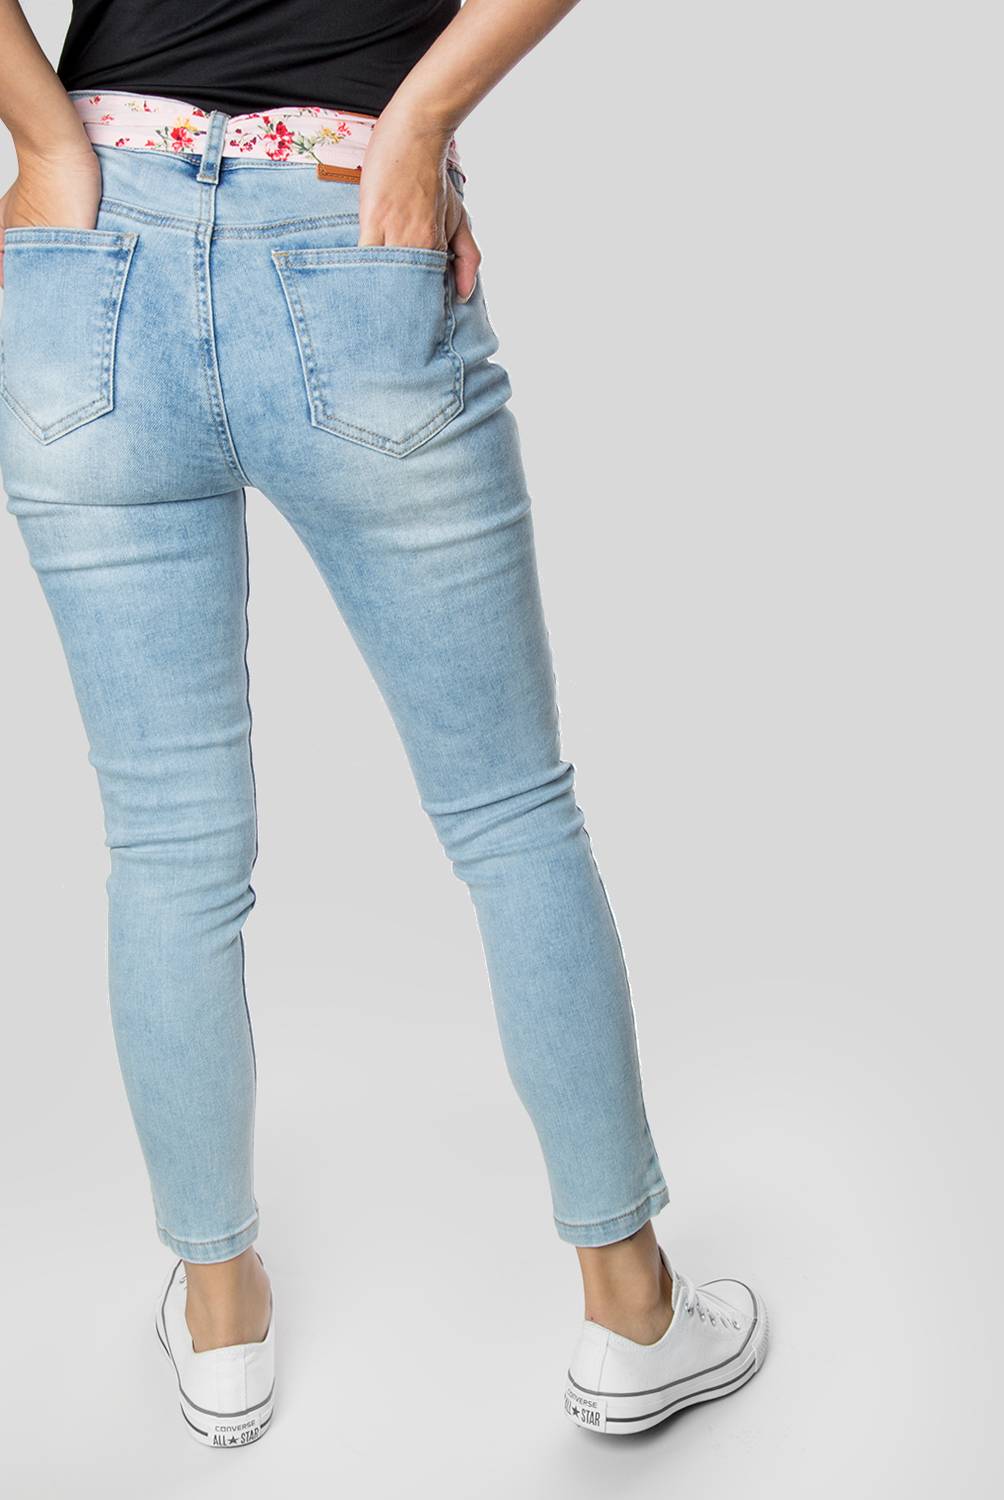 AEROPOSTALE - Jeans Estampado